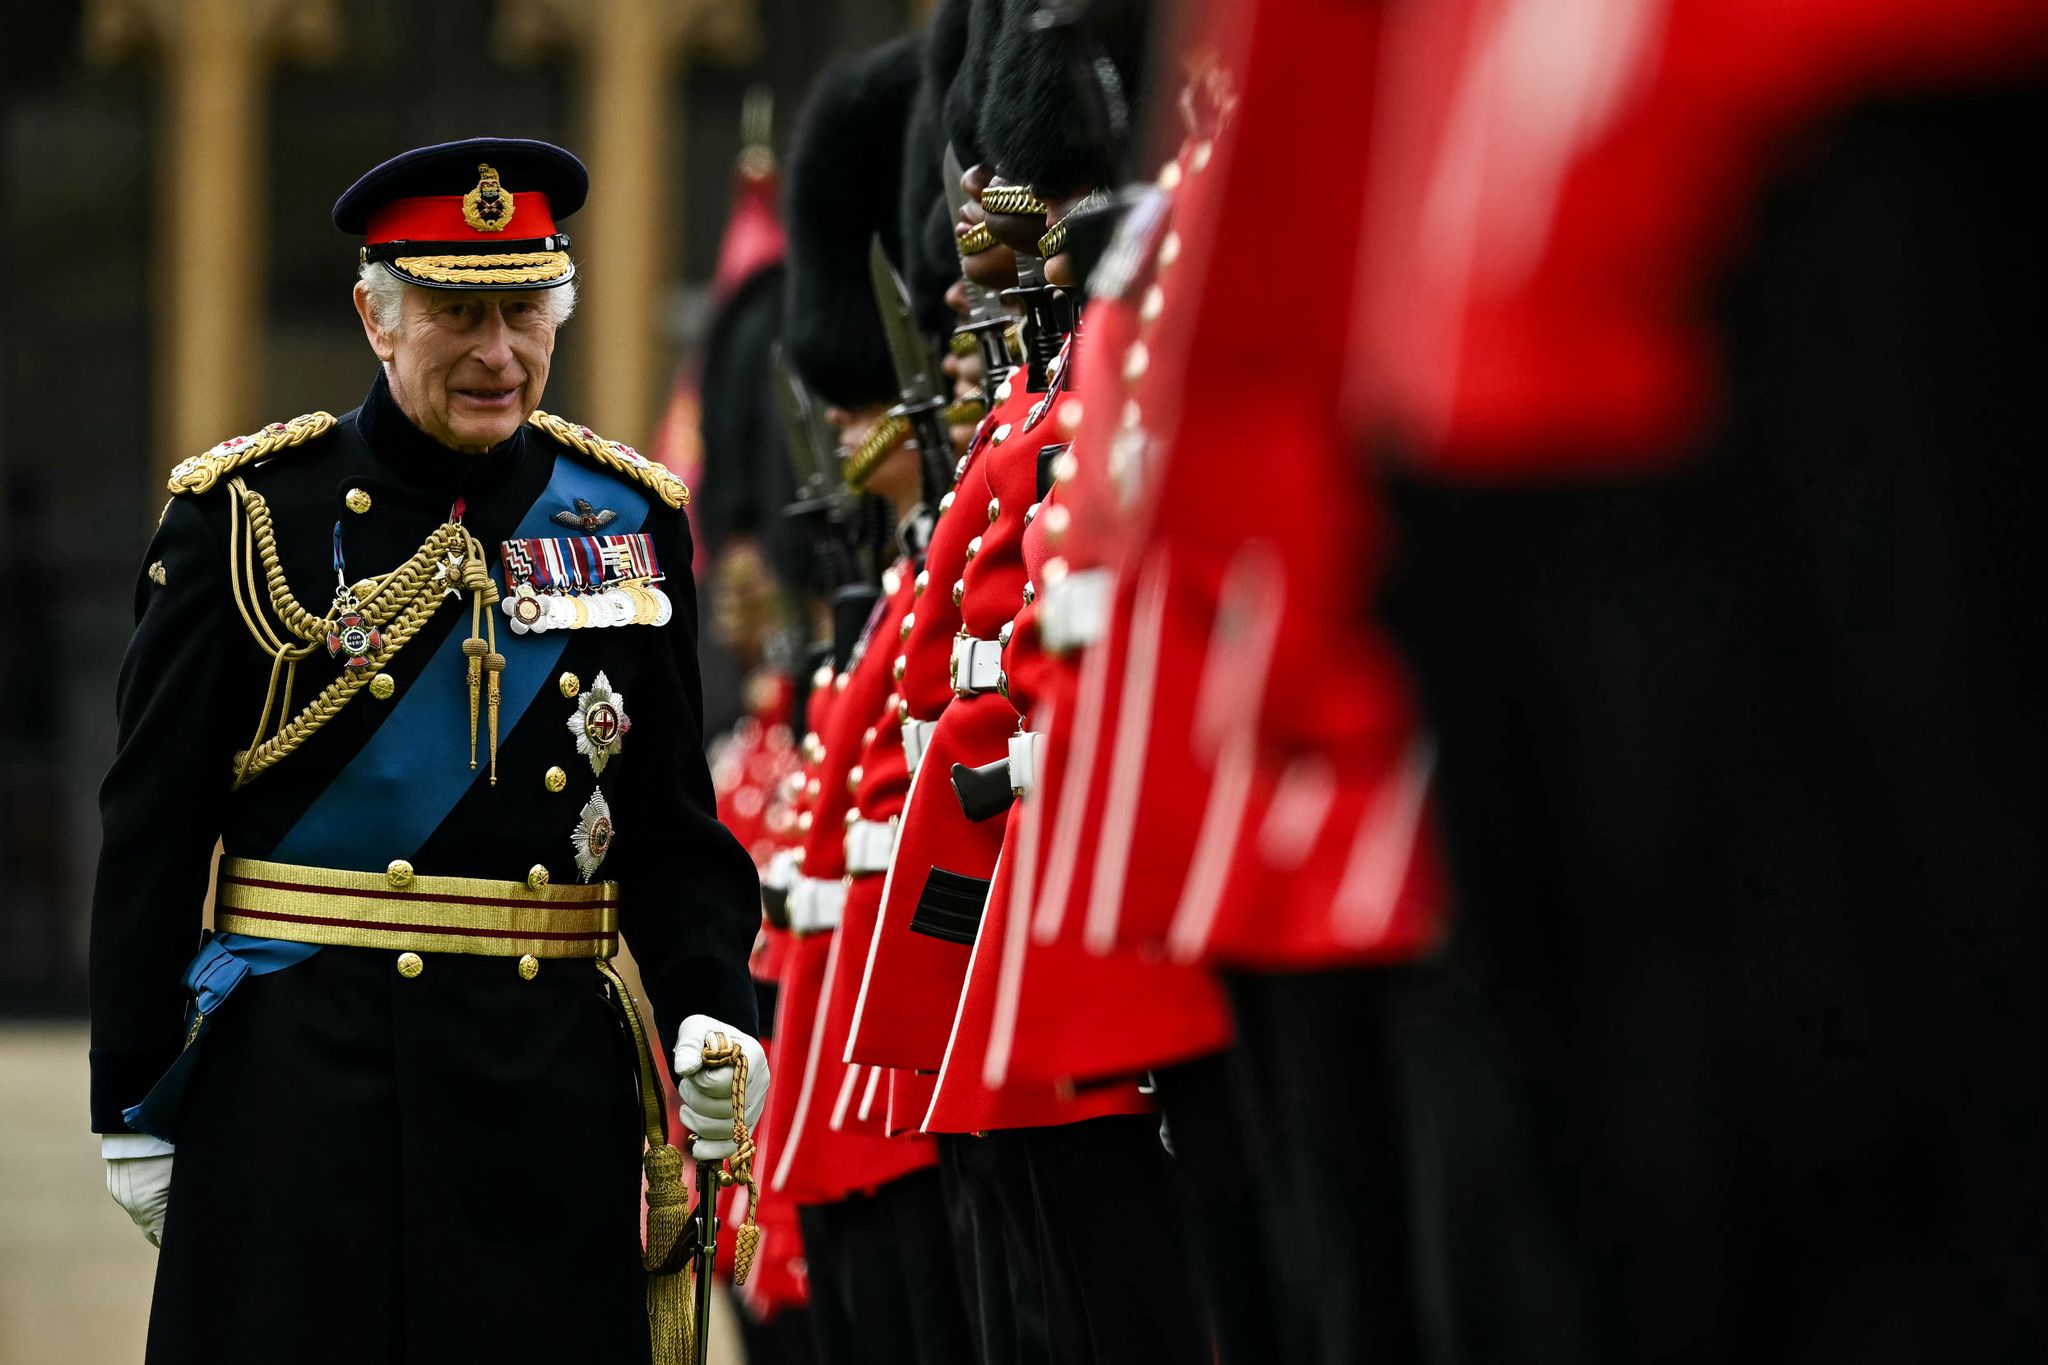 König Charles III. überreicht den Kompanien Nr. 9 und Nr. 12 der Irish Guards neue Fahnen. Foto: Ben Stansall/PA Wire/dpa